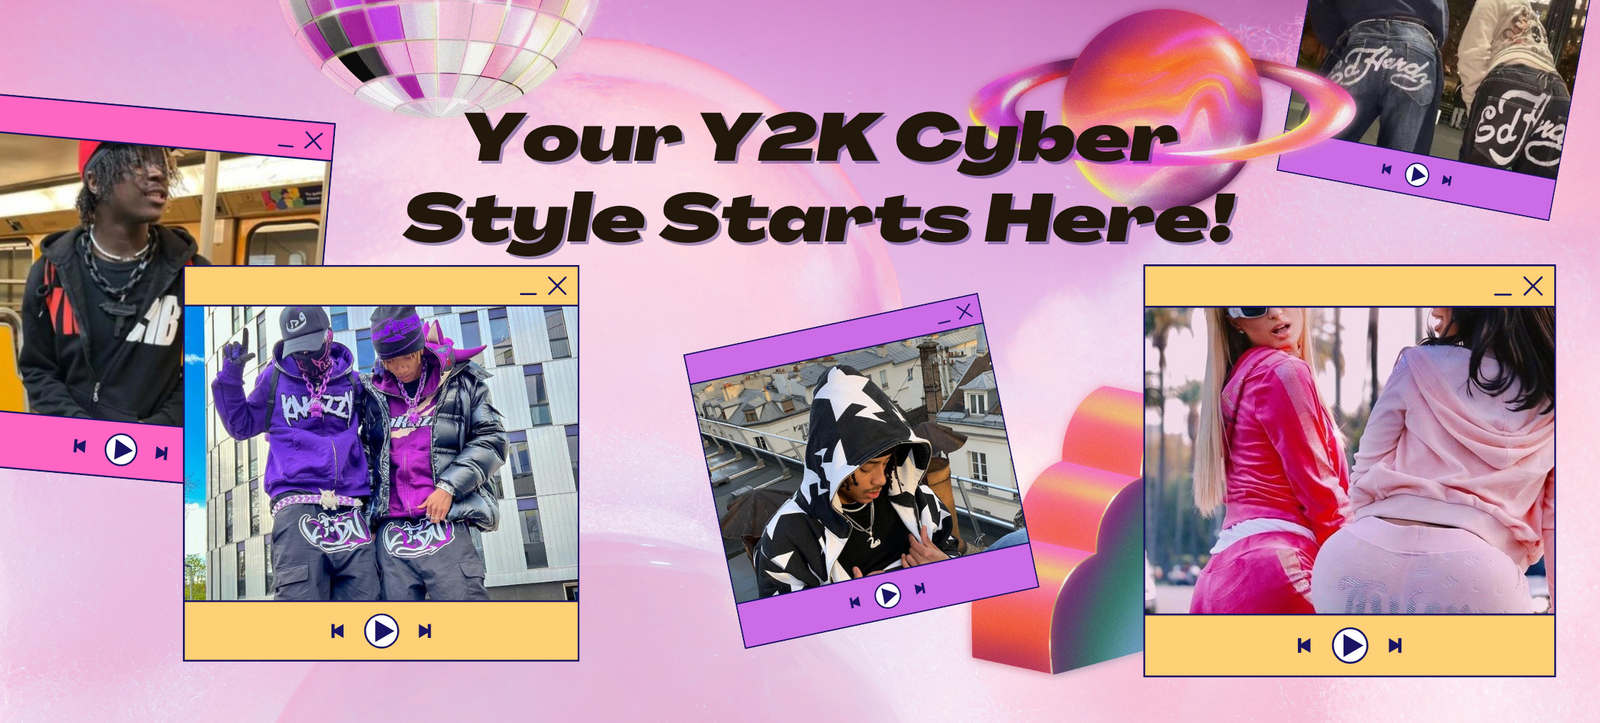 Cyber Y2k Aesthetic Clothing, Cyber Y2k Fashion